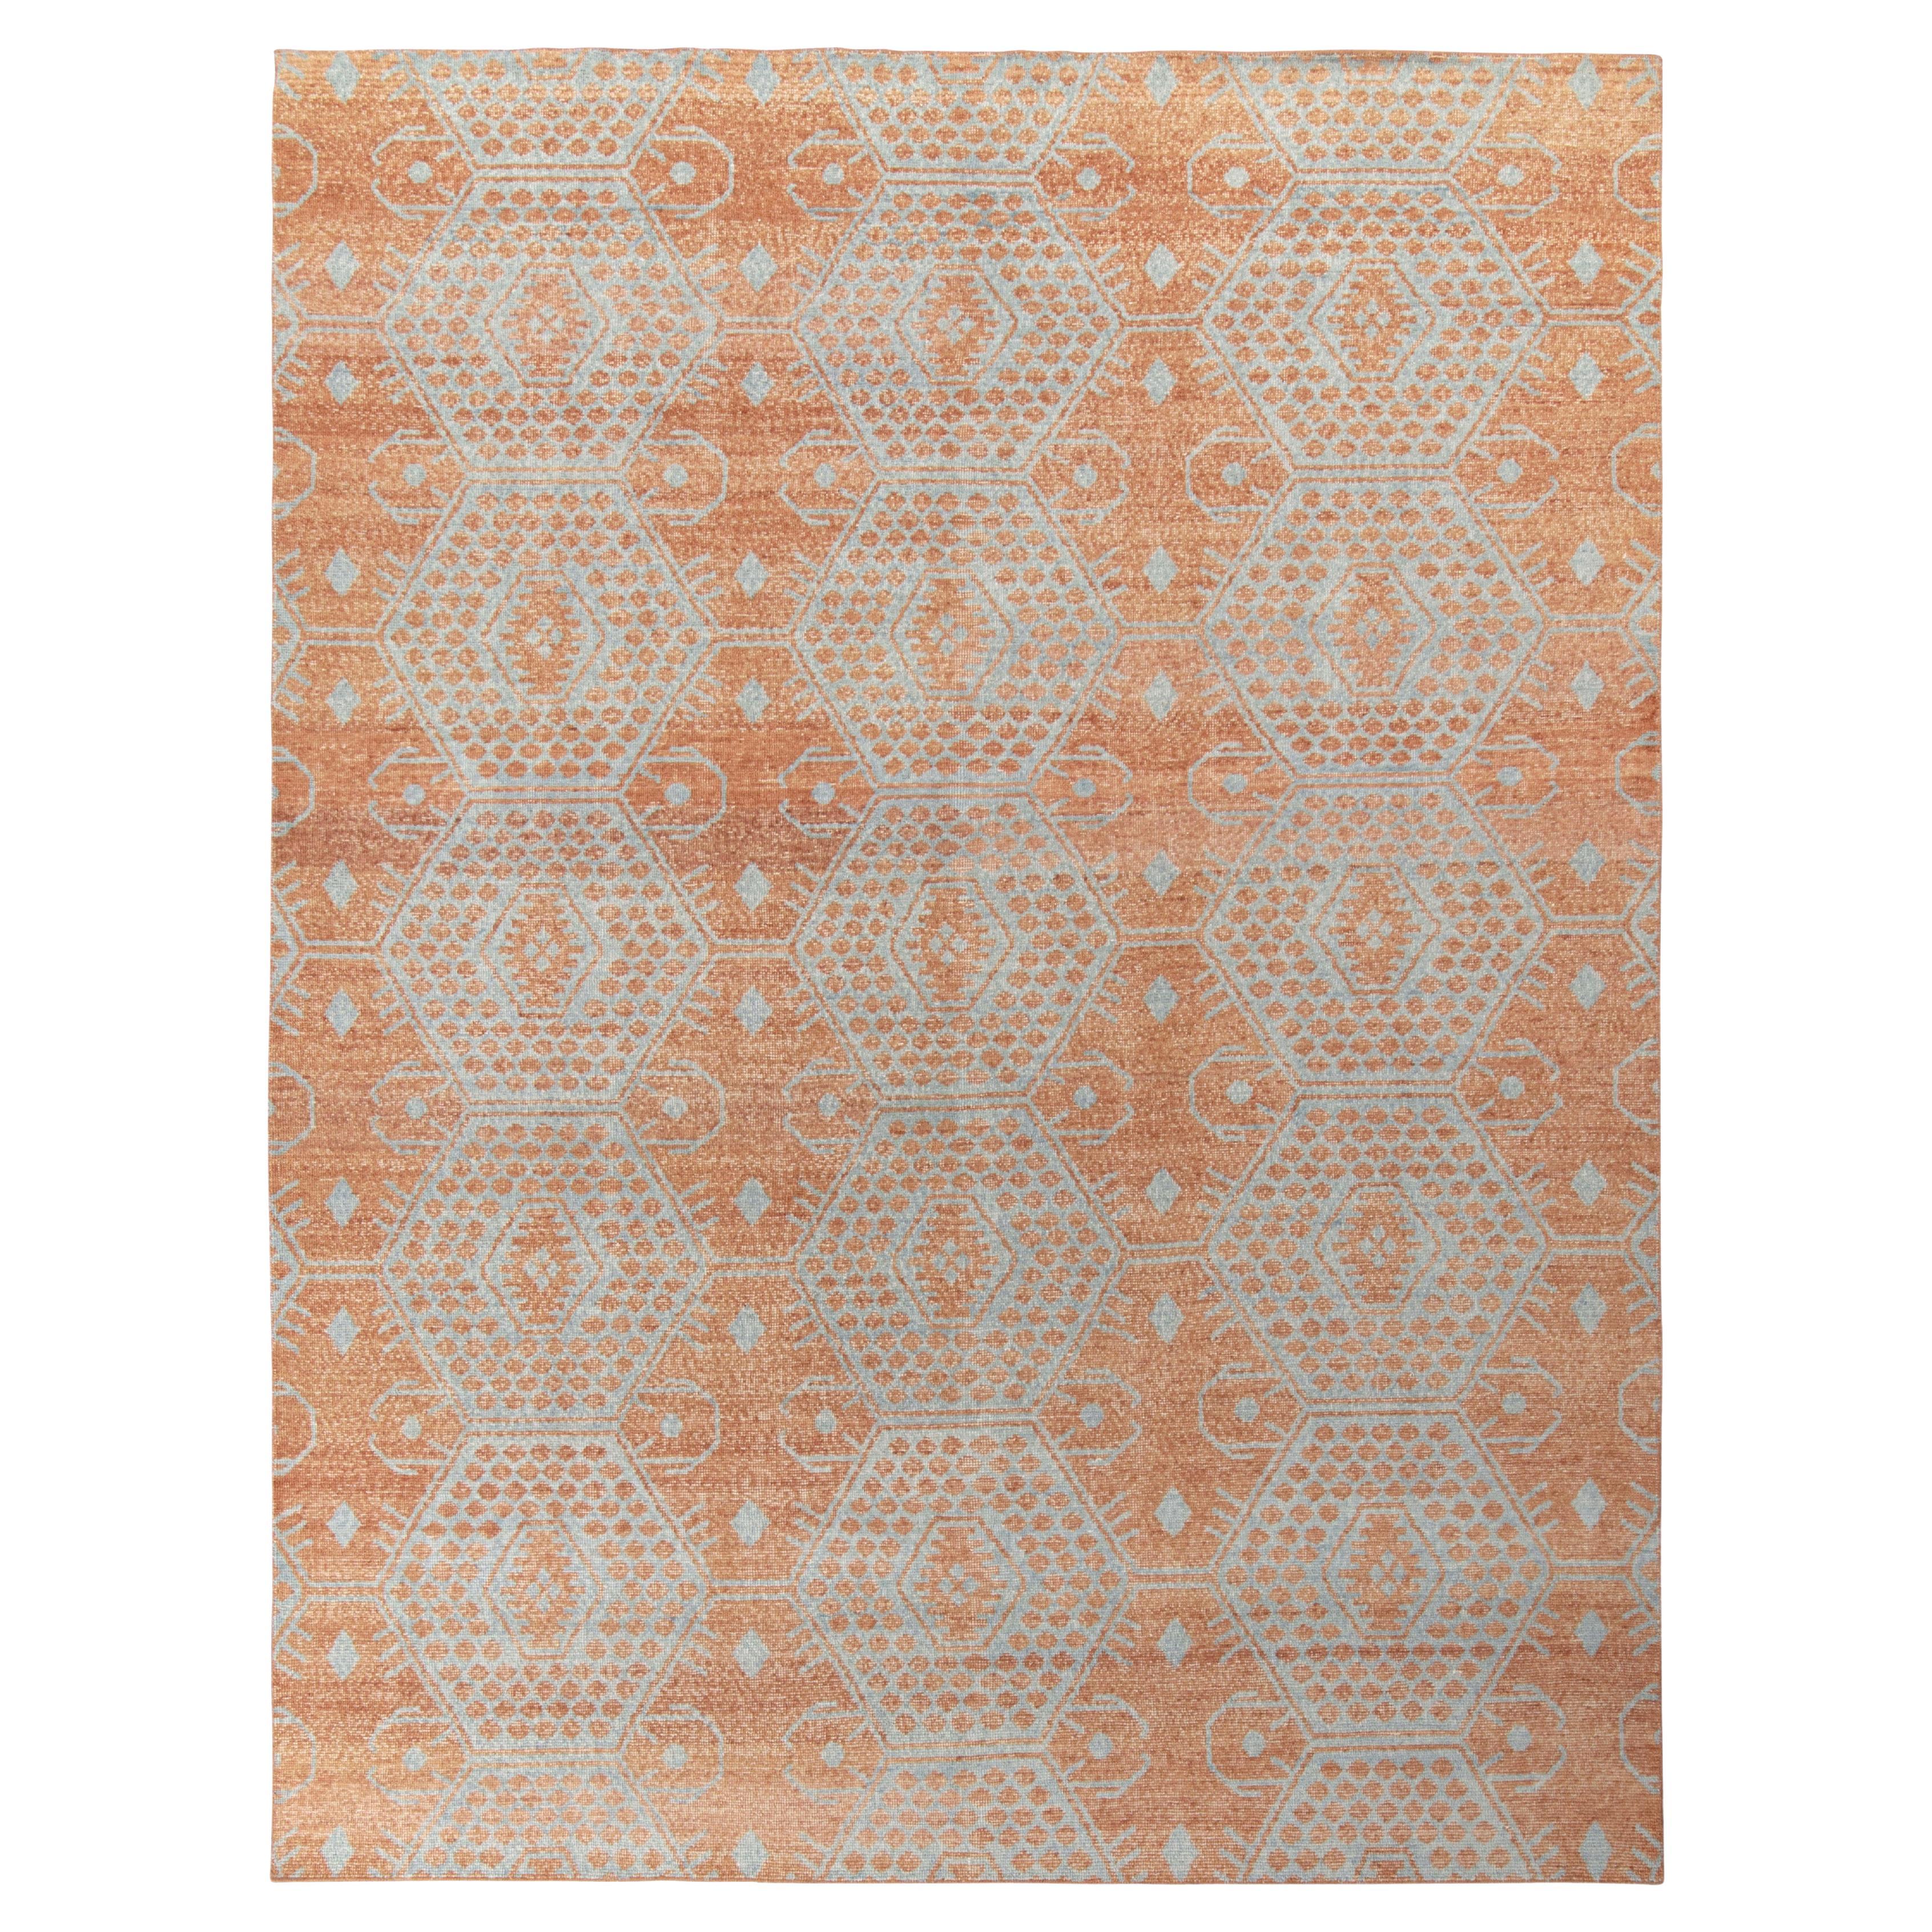 Tapis & Kilims - Tapis de style classique vieilli en orange, bleu à motif géométrique